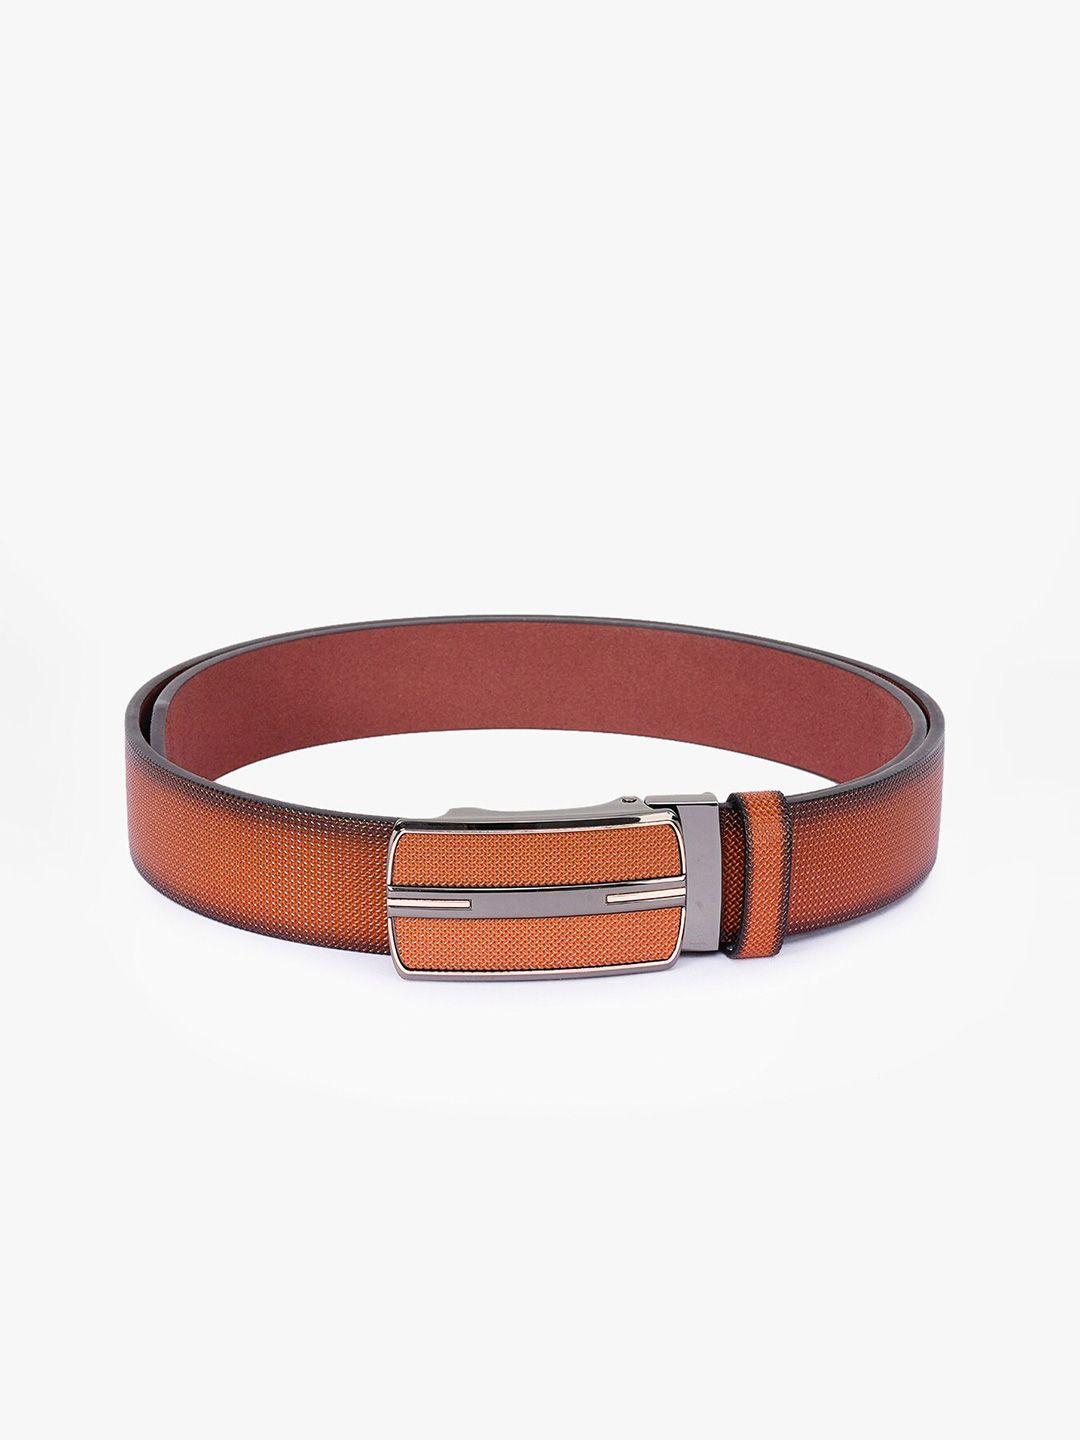 buckleup-men-tan-solid-leather-belt